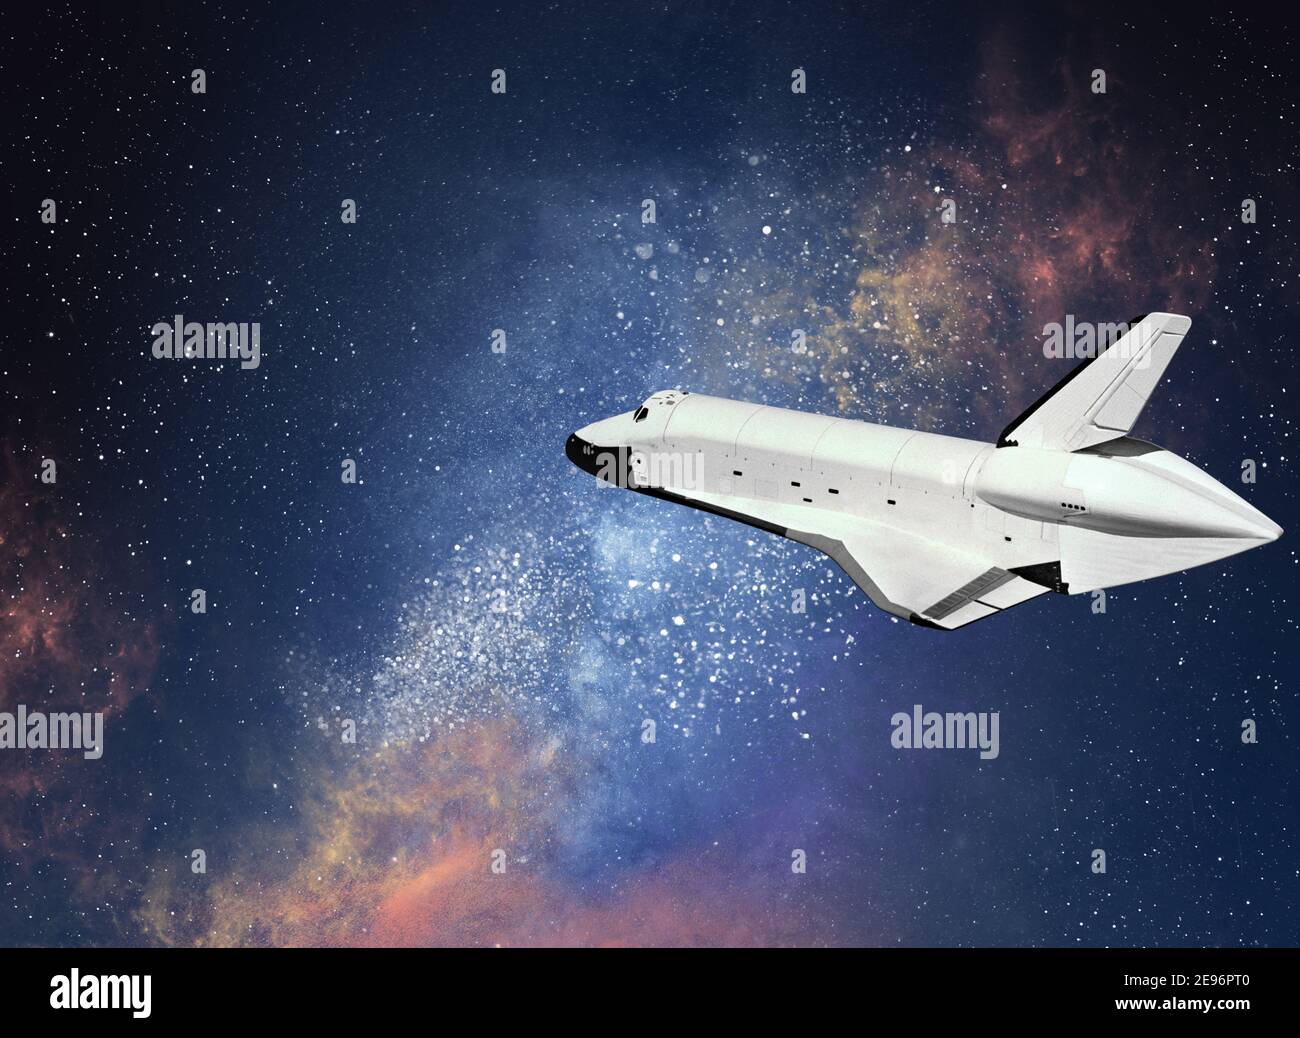 Imagen futurista del concepto de turismo de viajes espaciales, una de las características emergentes más emocionantes de la industria turística más amplia, el vuelo espacial comercial en Foto de stock